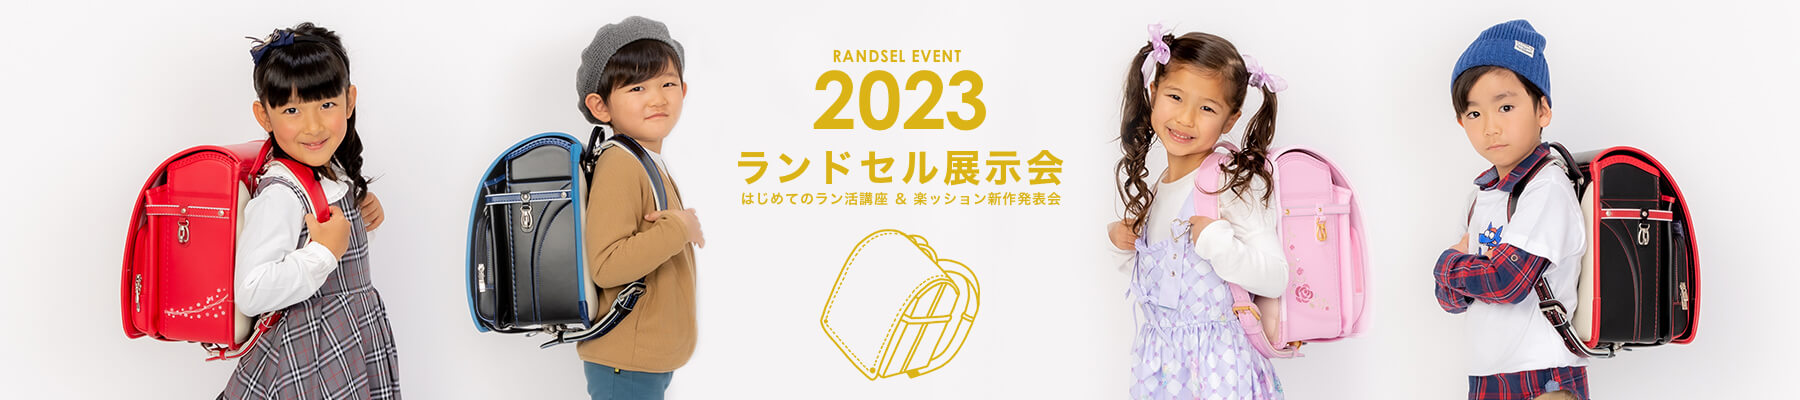 2023 ランドセル展示会 はじめてのラン活&楽ッション新作発表会